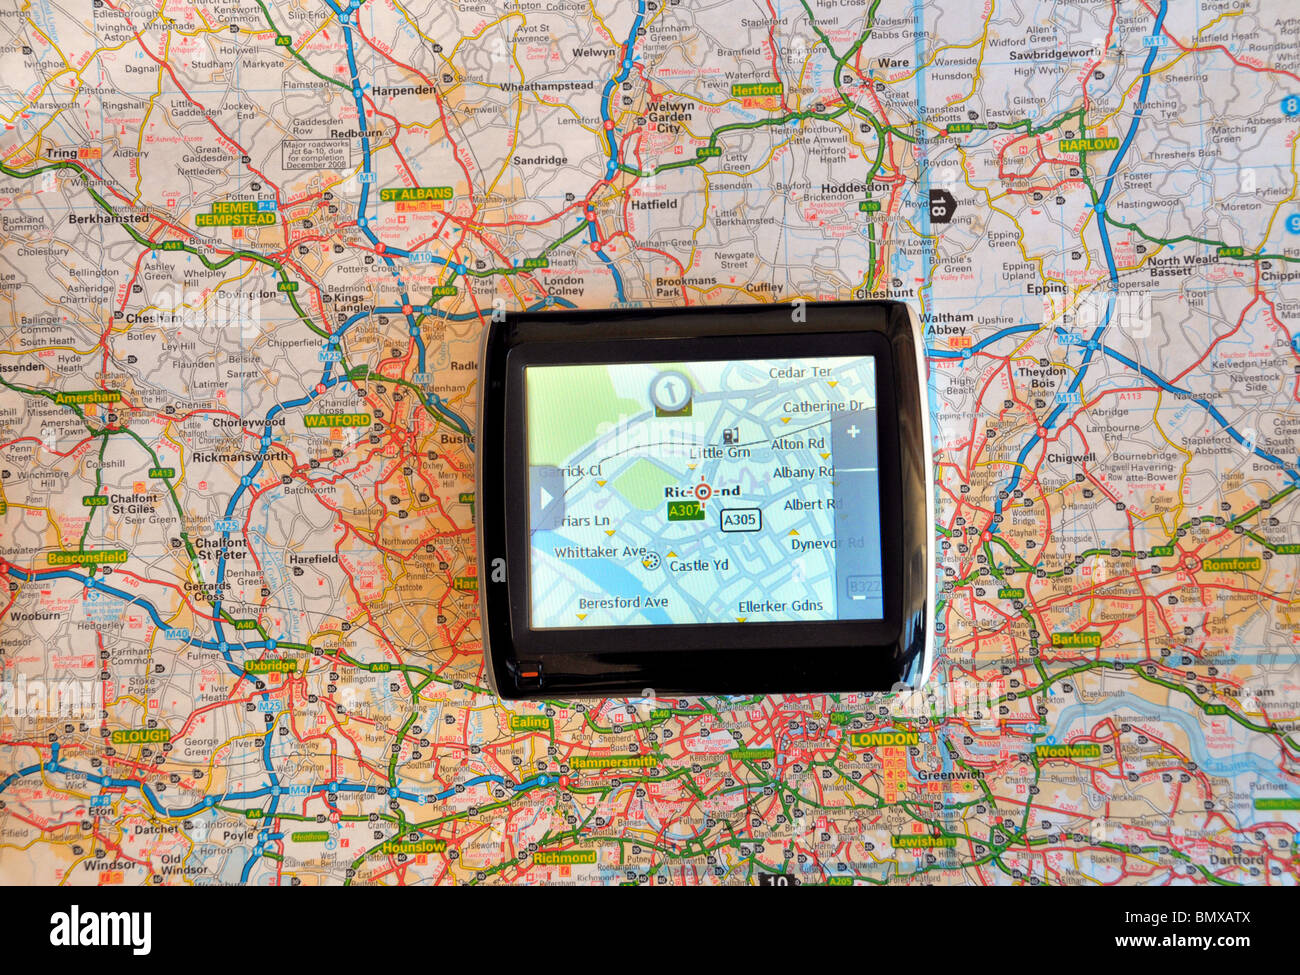 Teil einer Karte von London Straßen gesehen, sowohl auf einem Navi Bildschirm und traditionellen Fahrplan. Stockfoto